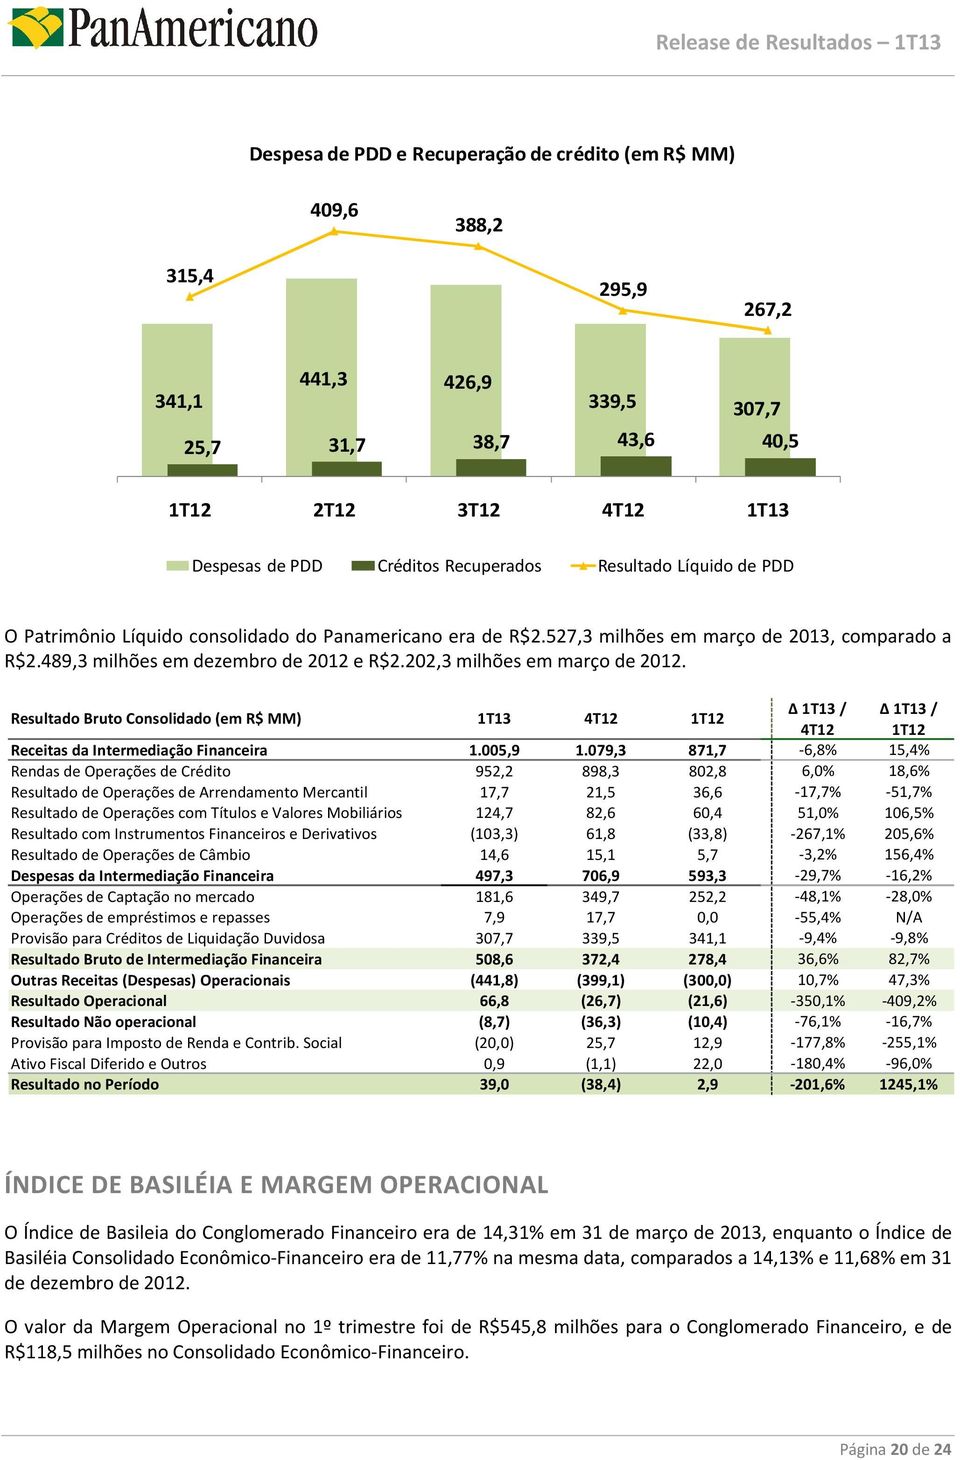 PDD O Patrimônio Líquido consolidado do Panamericano era de R$2.527,3 milhões em março de 2013, comparado a R$2.489,3 milhões em dezembro de 2012 e R$2.202,3 milhões em março de 2012.